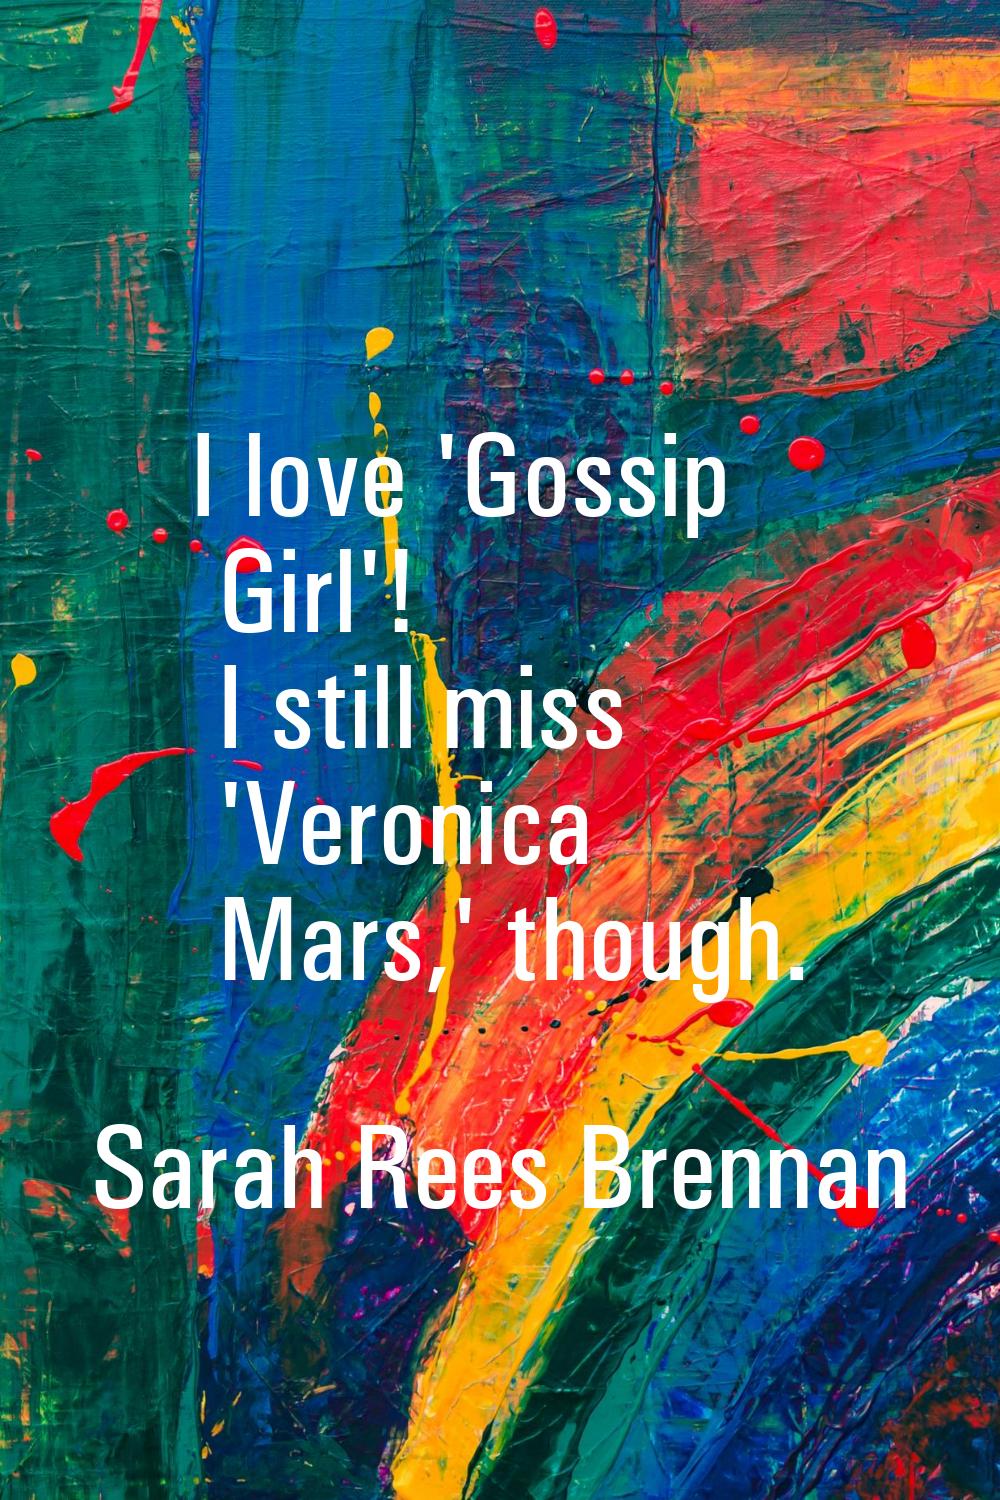 I love 'Gossip Girl'! I still miss 'Veronica Mars,' though.